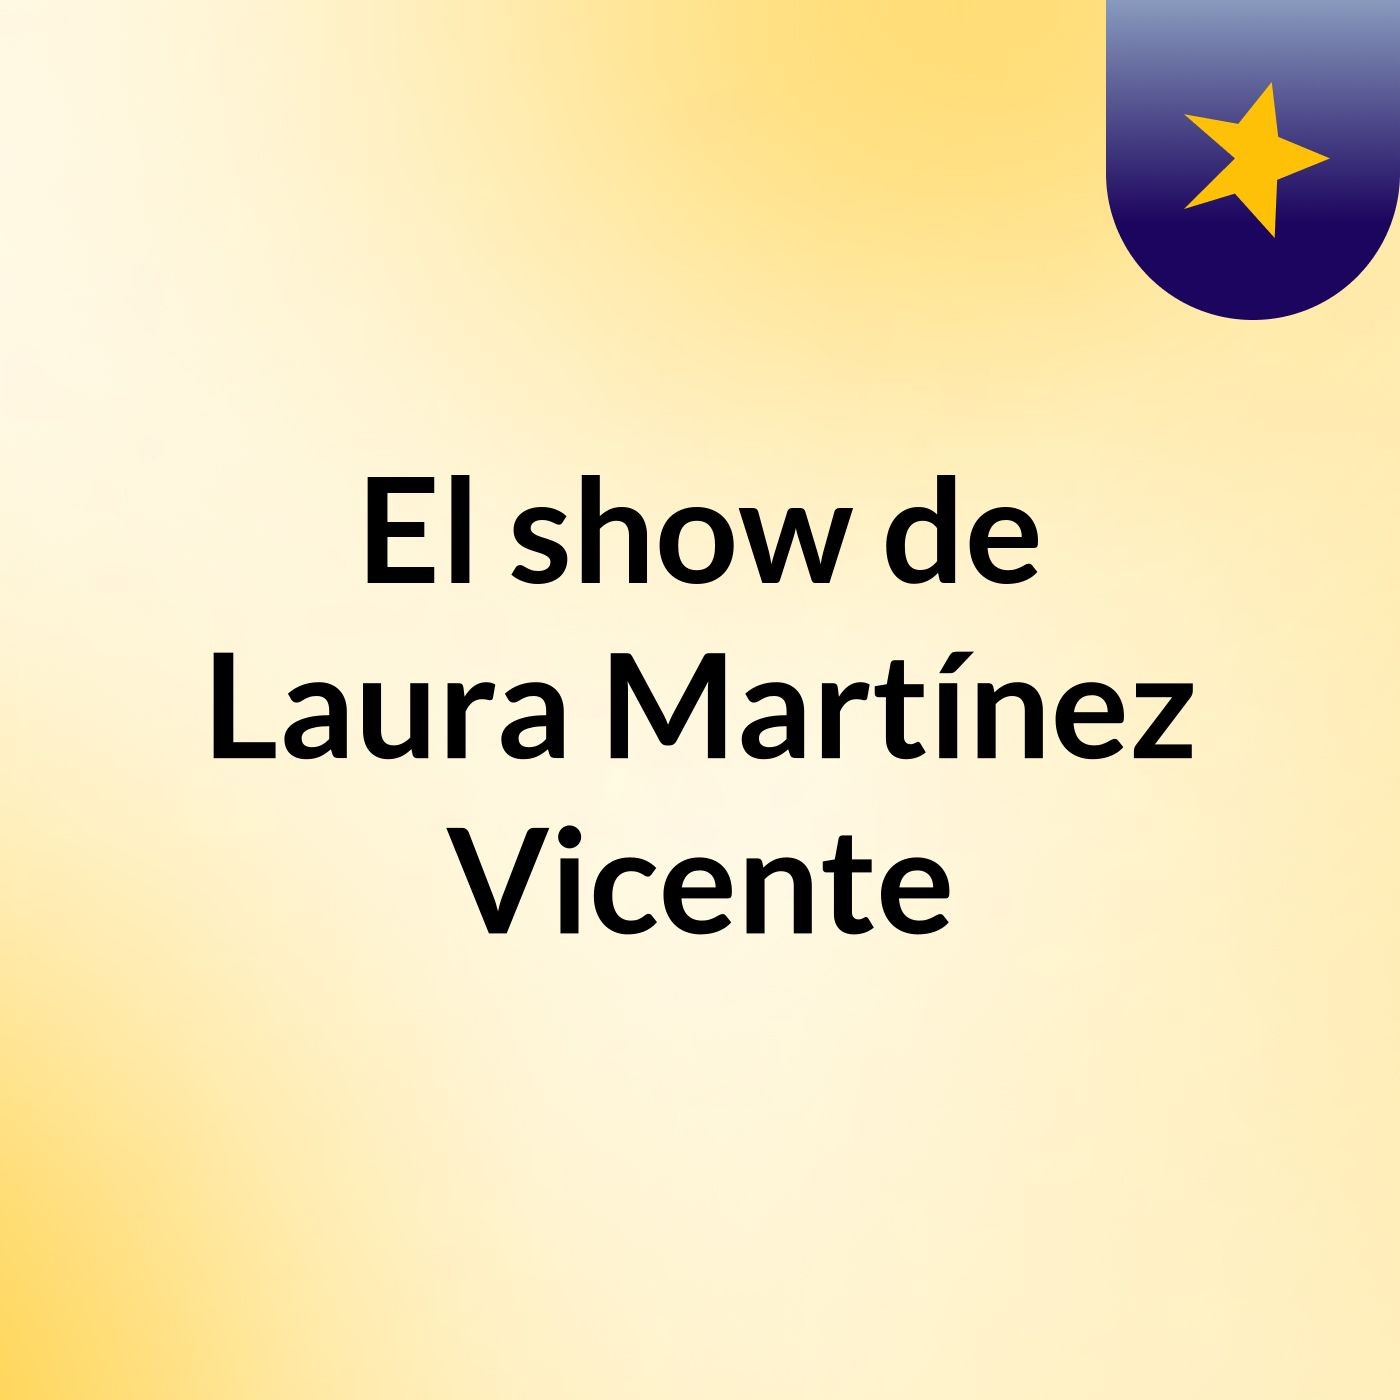 El show de Laura Martínez Vicente